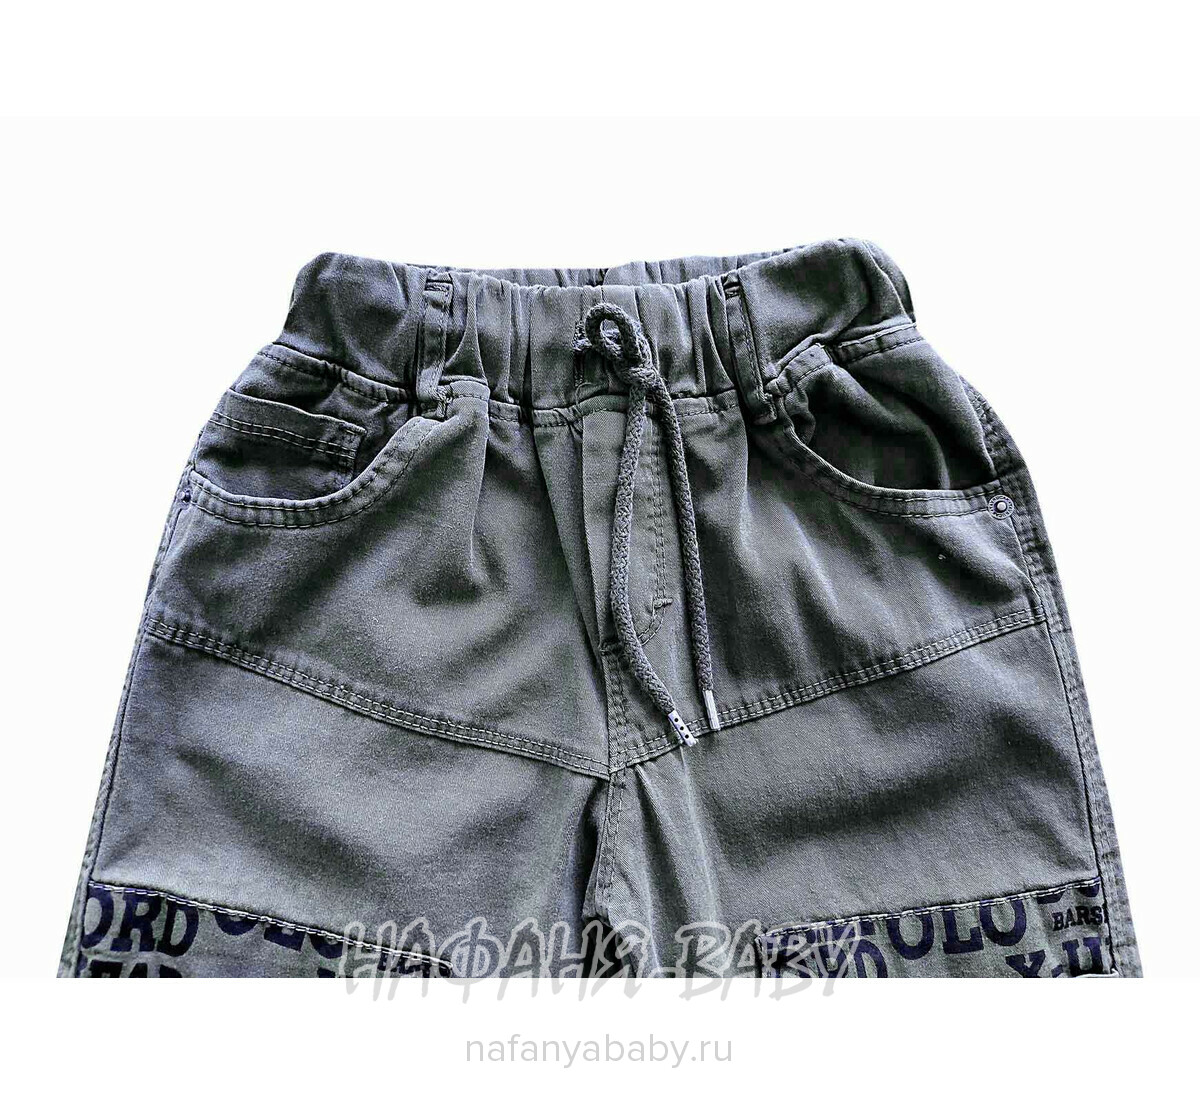 Детские летние брюки YAVRUCAK арт: 4256, 3-7 лет, цвет темно-серый, оптом Турция